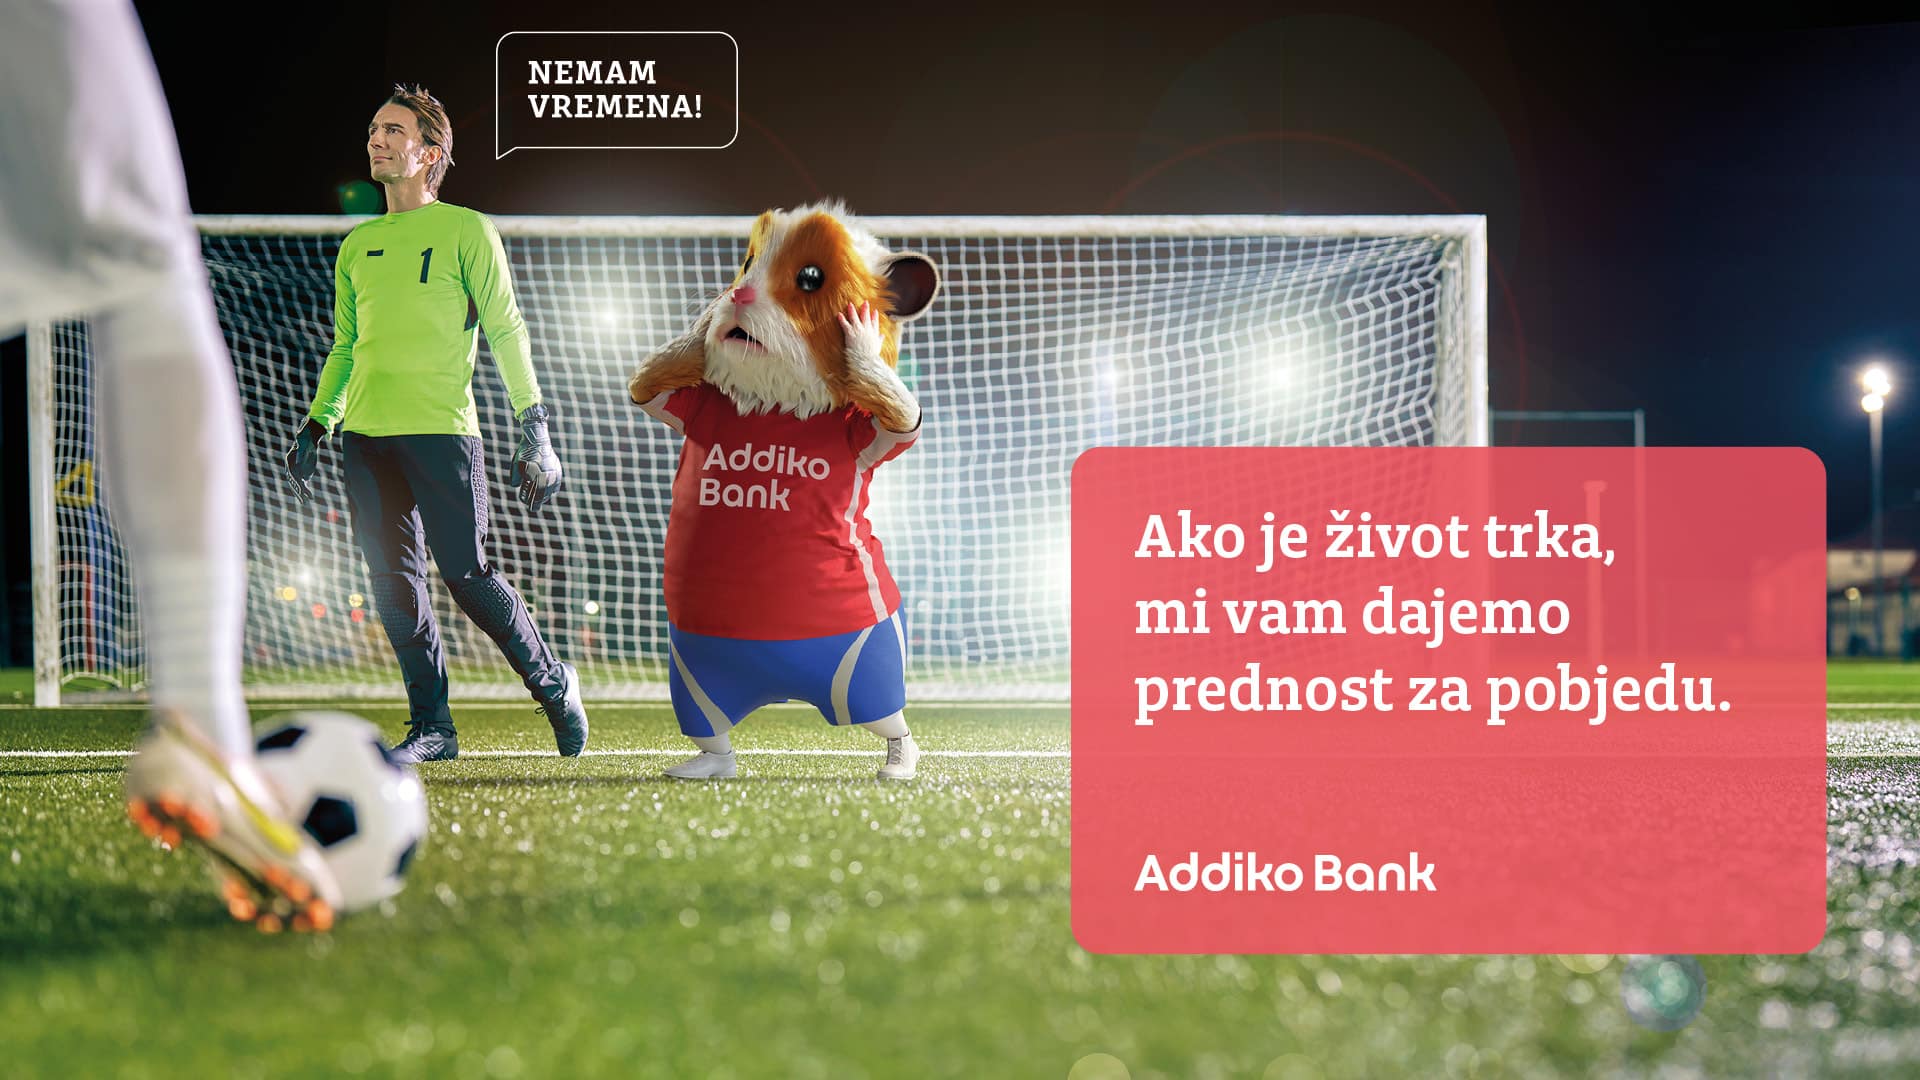 Nova kampanja Addiko Banke / "Ako je život trka, mi vam dajemo prednost za pobjedu"